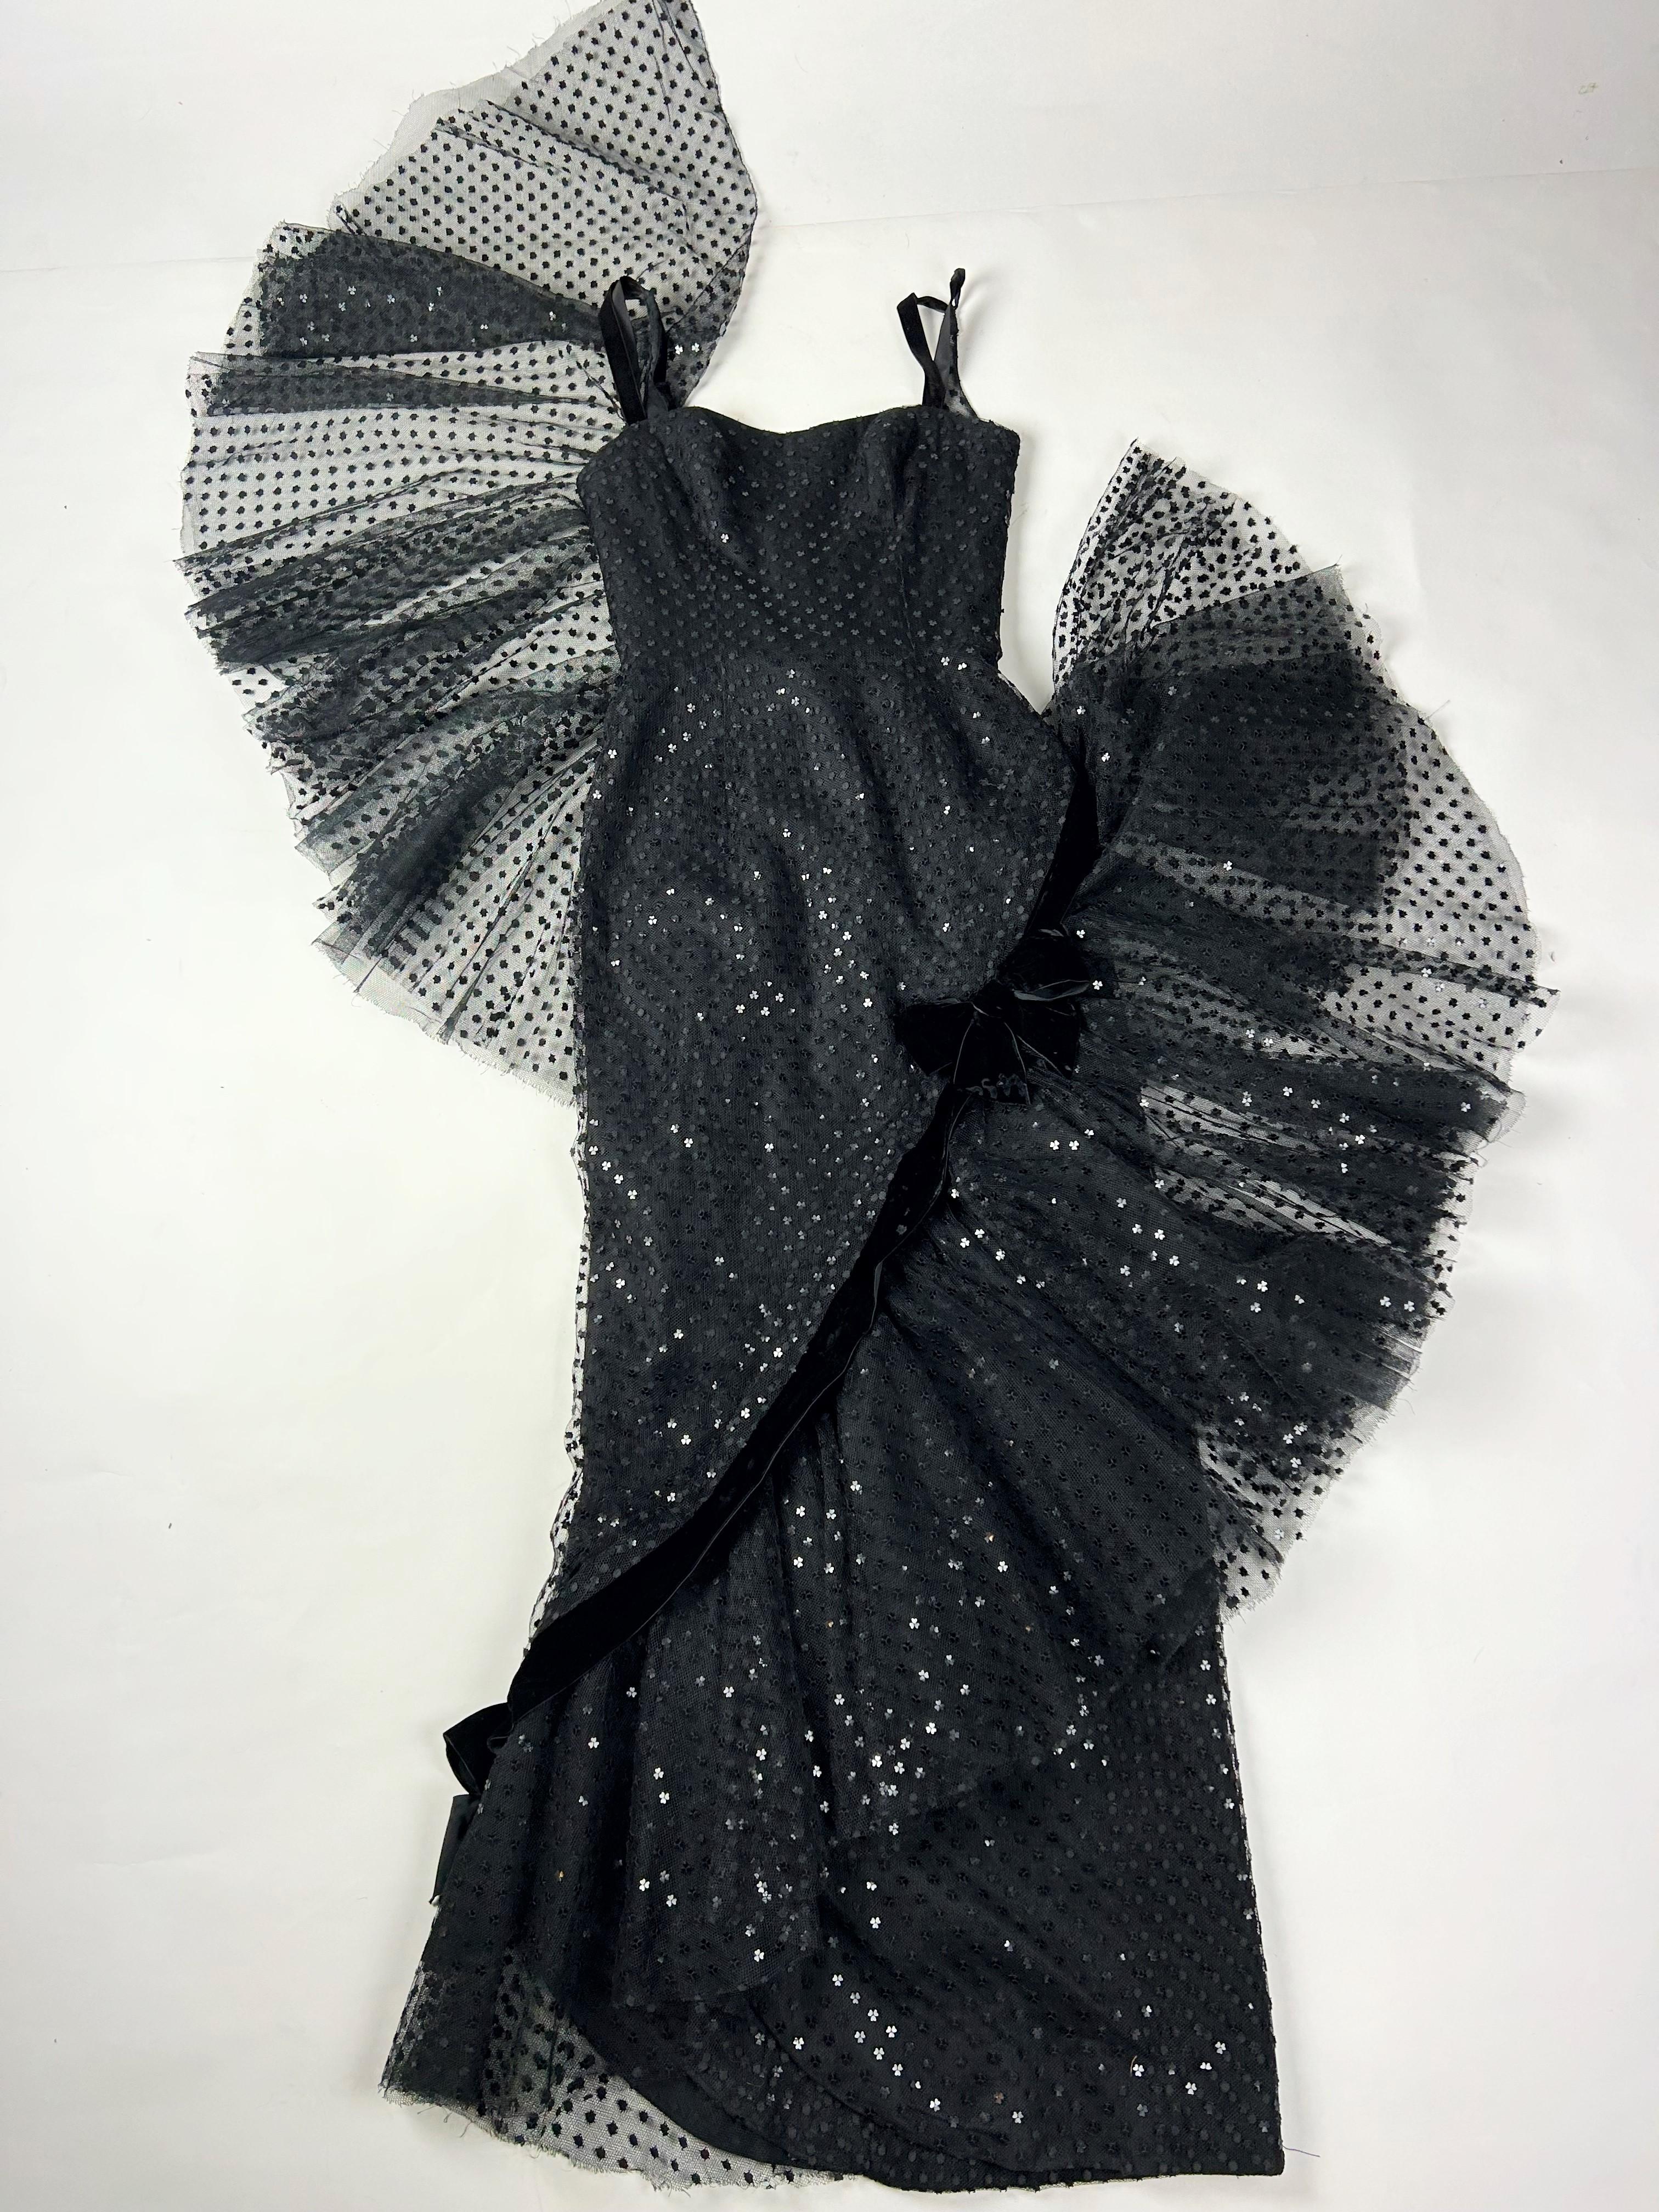 Circa 1958-1963

France

Spectaculaire robe du soir en tulle noir brodé de paillettes en forme de cœur par Jean Dessès Haute Couture et datant du début des années 1960. Robe sans manches, moulante et gainante mettant en valeur la silhouette. Grand